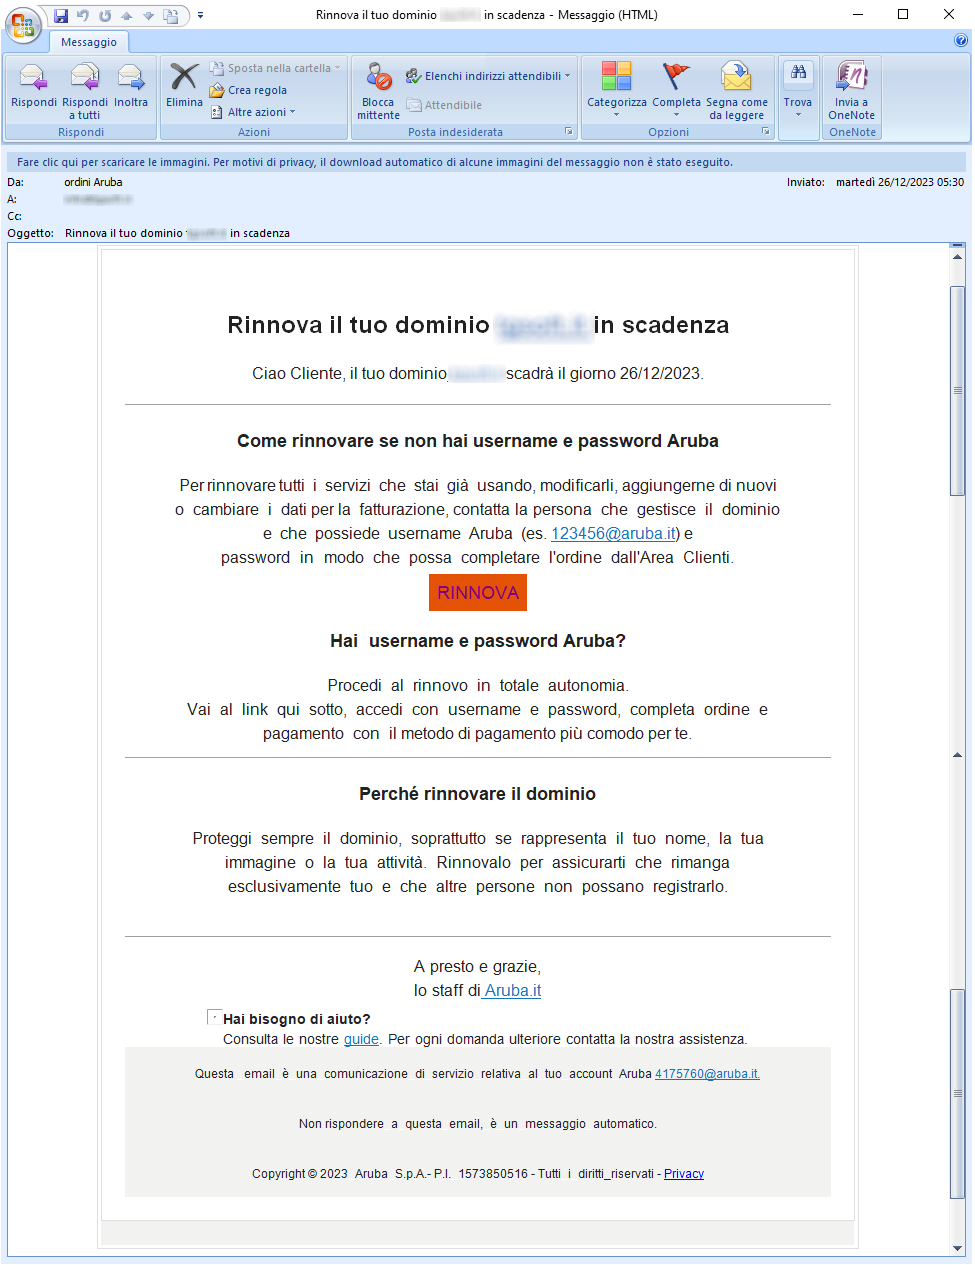 Clicca per ingrandire l'immagine della falsa e-mail di Aruba che induce l'utente ad effettuare il rinnovo del dominio, ma in realtà è una TRUFFA!